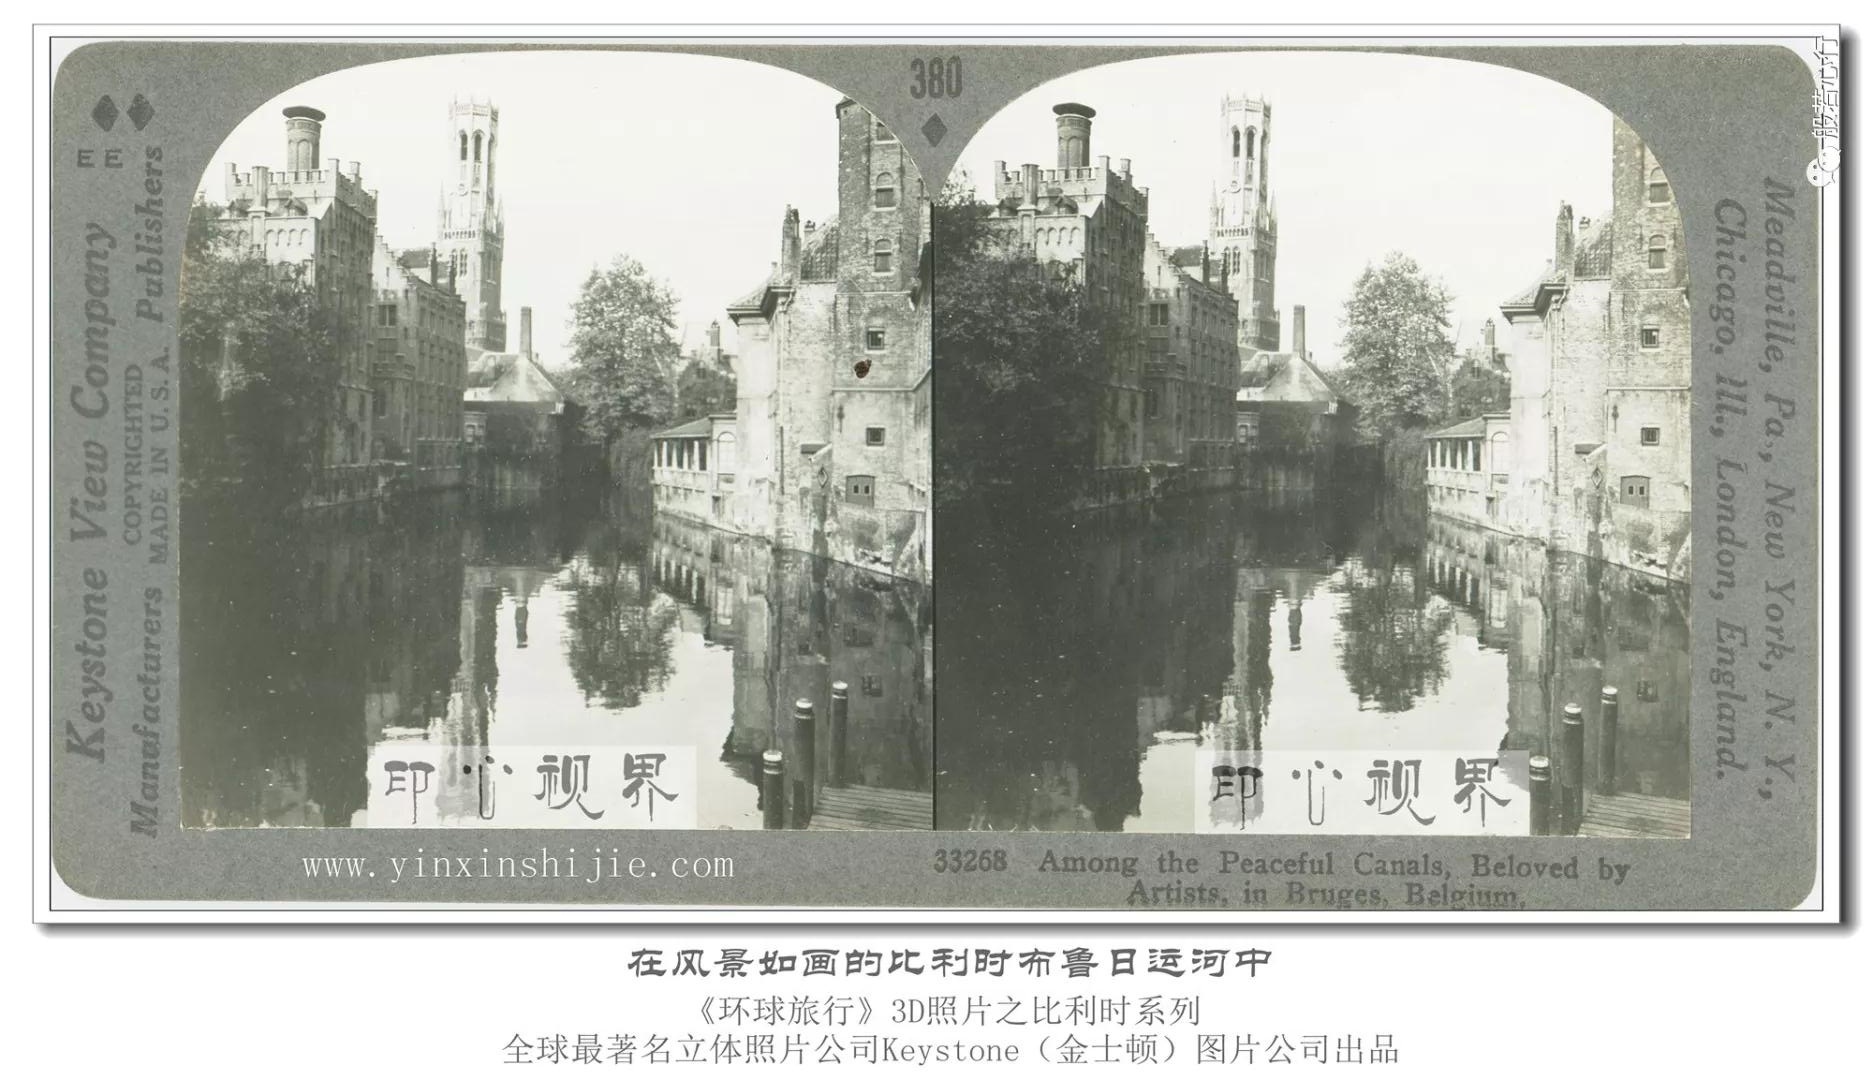 在风景如画的比利时布鲁日运河中-1936年3D版《环球旅行》立体照片